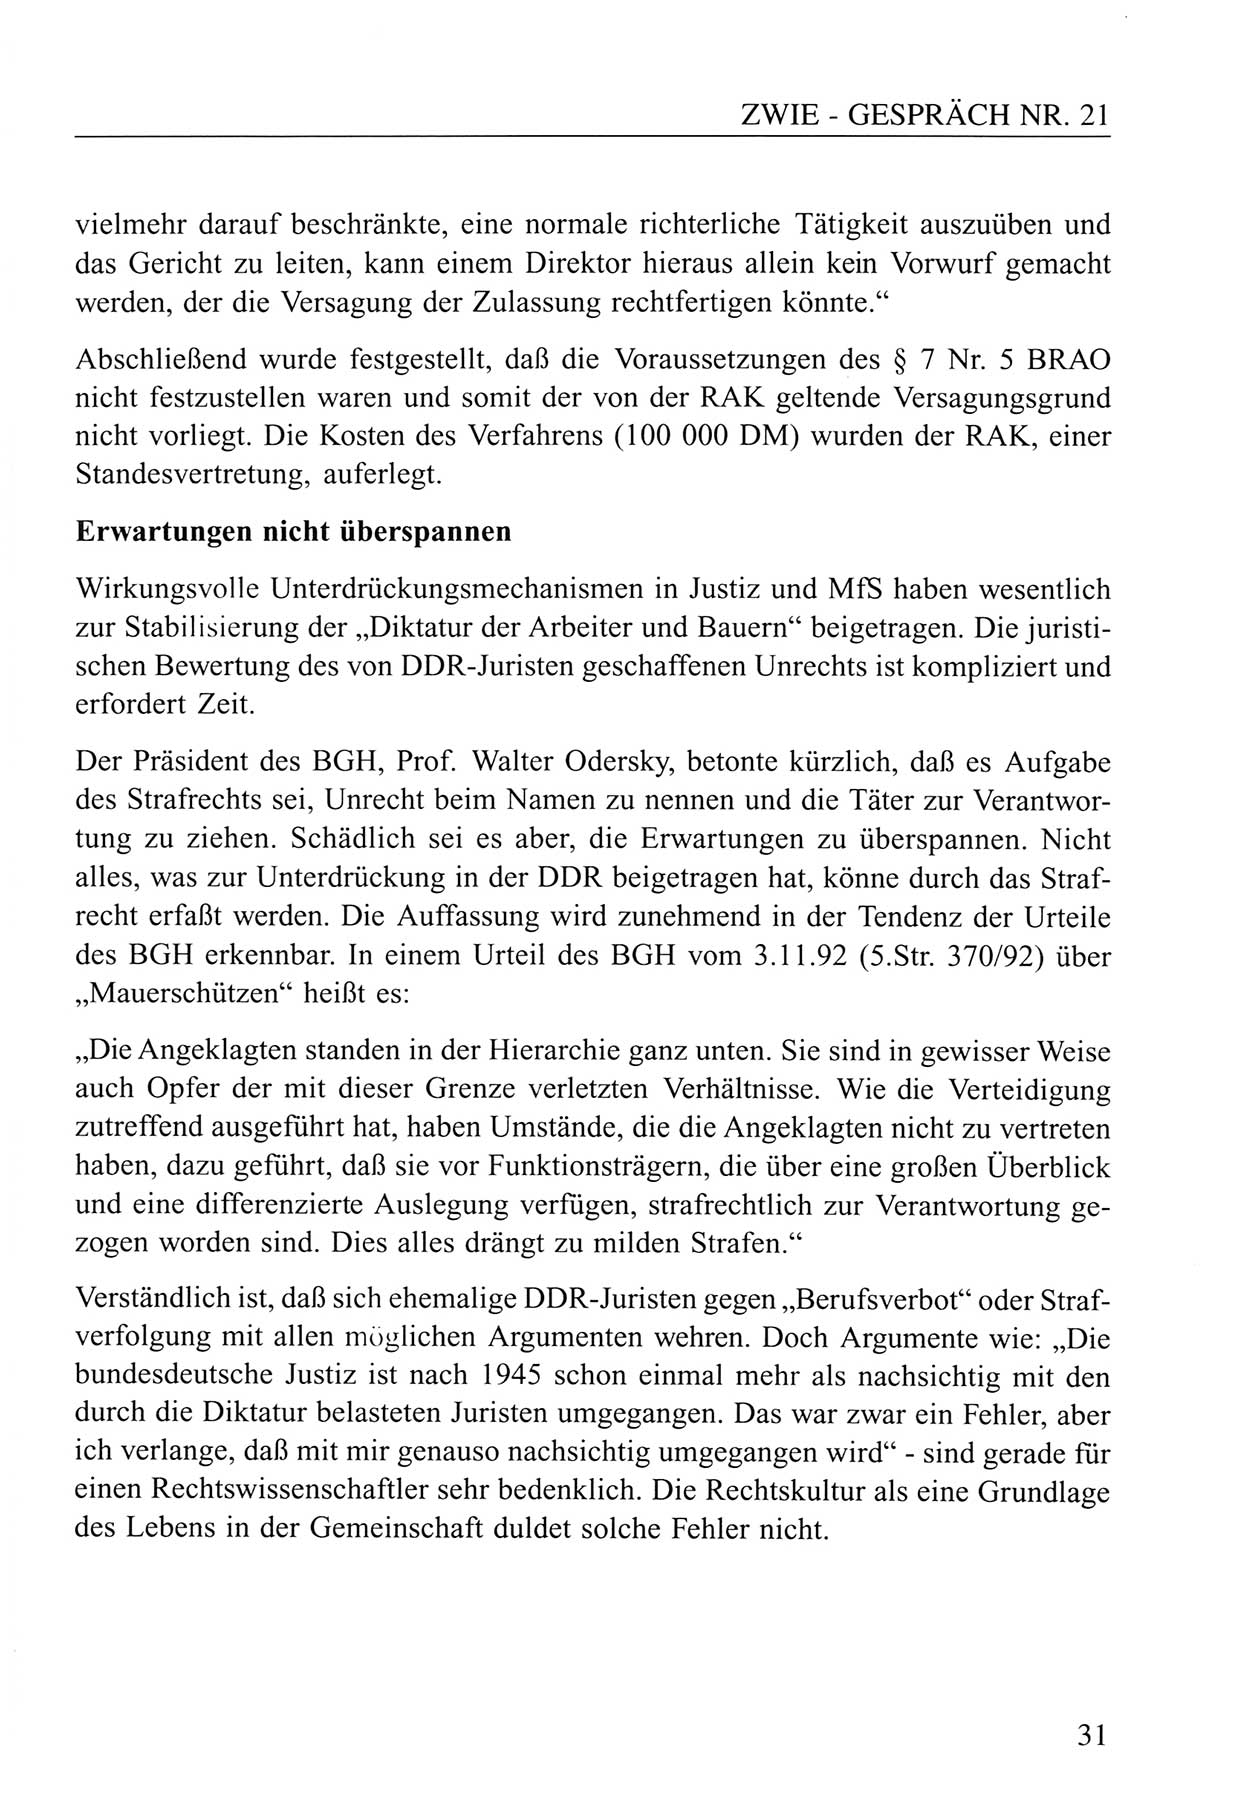 Zwie-Gespräch, Beiträge zum Umgang mit der Staatssicherheits-Vergangenheit [Deutsche Demokratische Republik (DDR)], Ausgabe Nr. 21, Berlin 1994, Seite 31 (Zwie-Gespr. Ausg. 21 1994, S. 31)